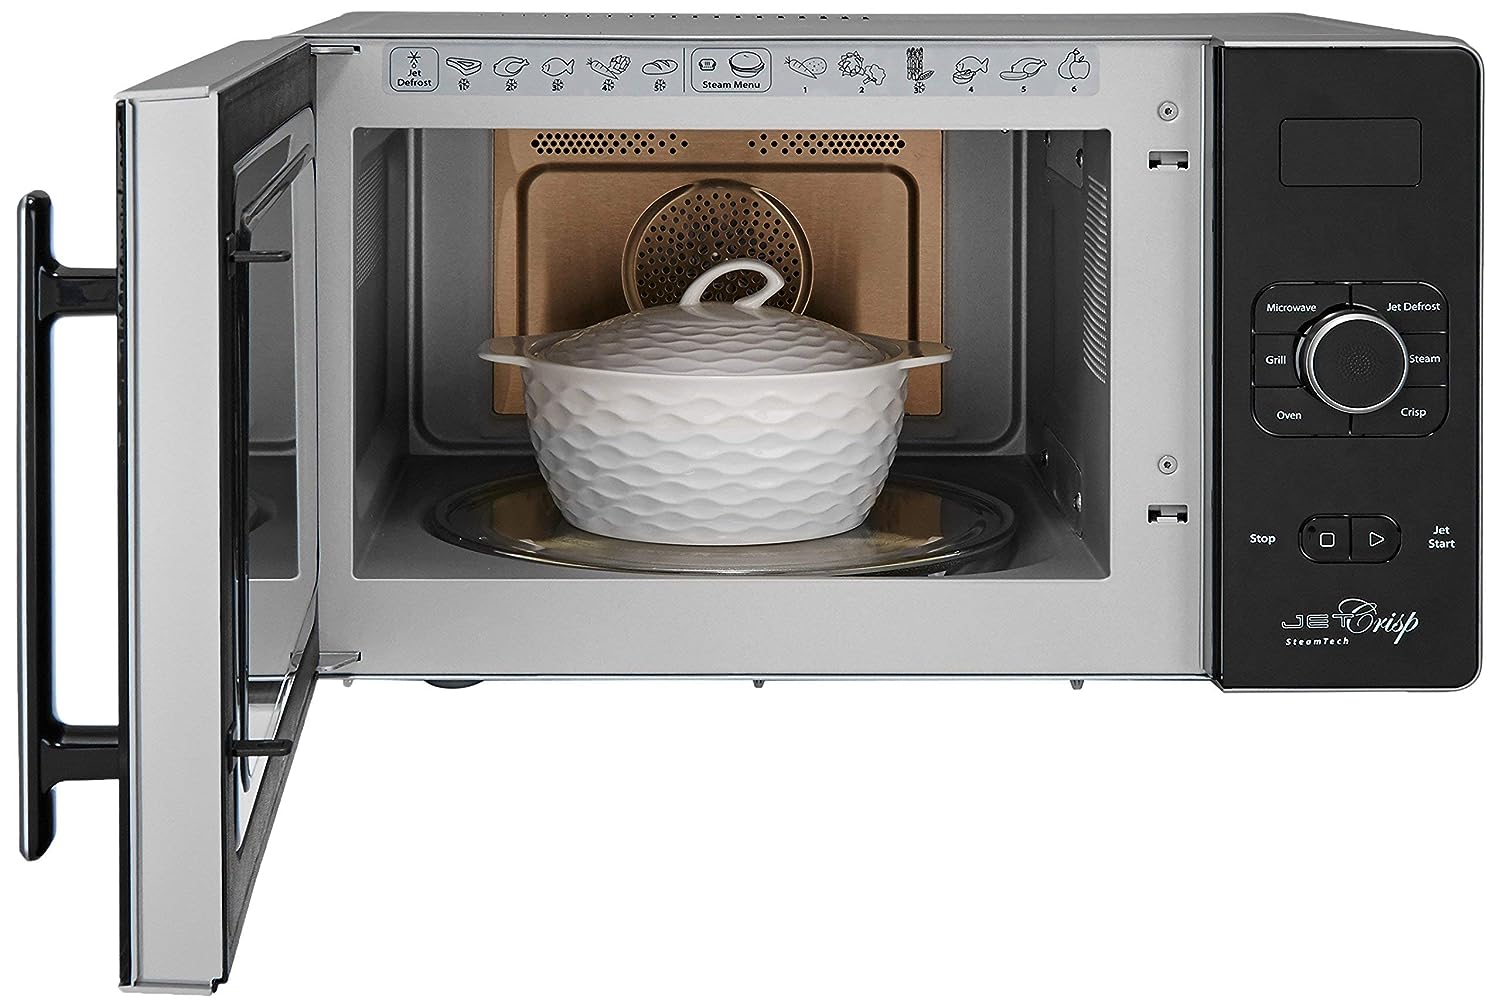 Whirlpool Microwaves - How does Crisp work? 